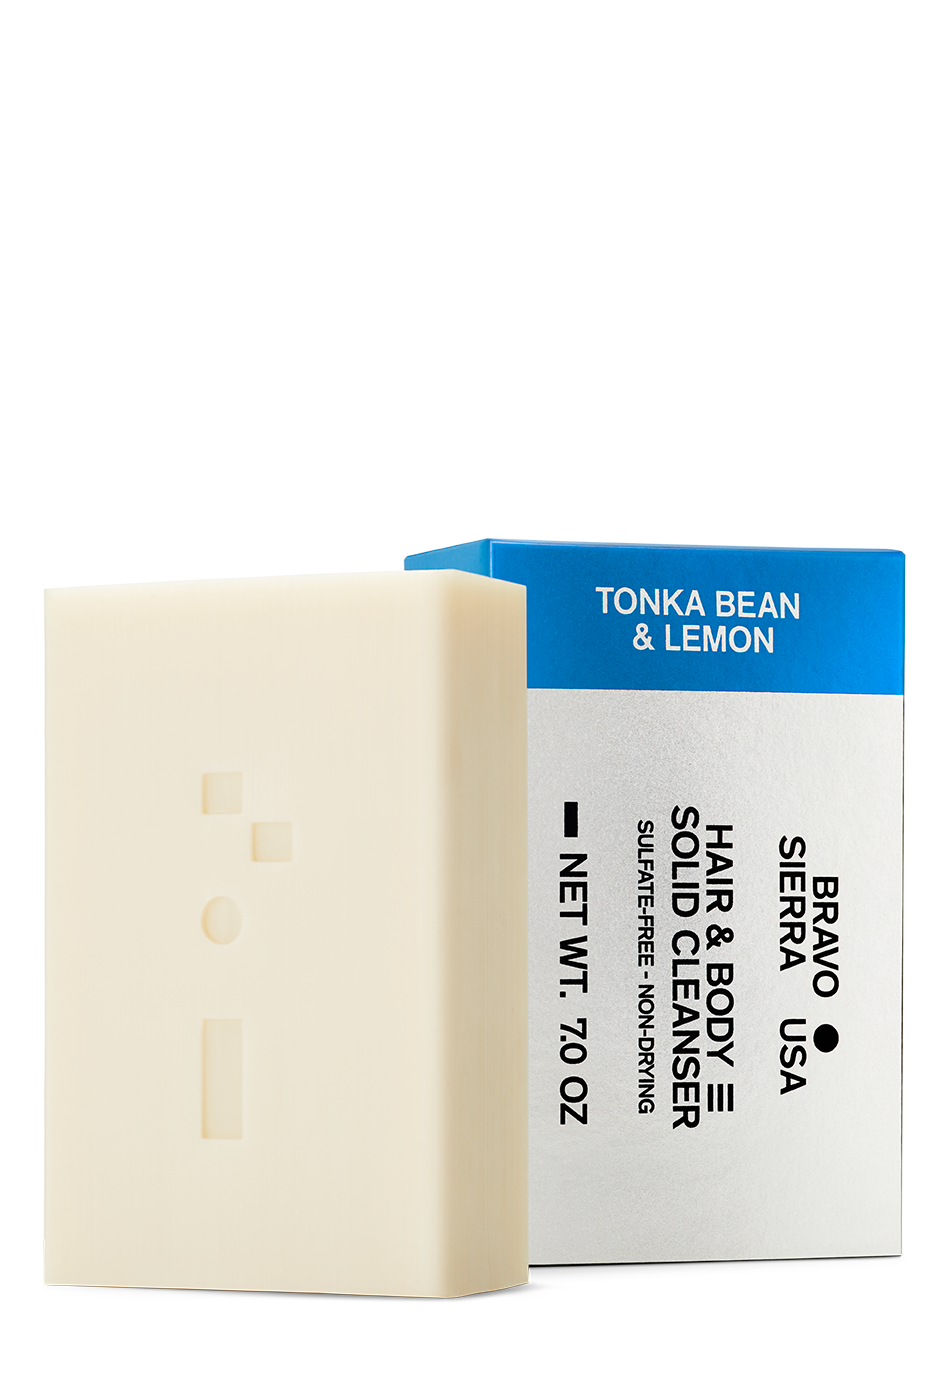 HAIR & BODY SOLID CLEANSER - TONKA BEAN & LEMON